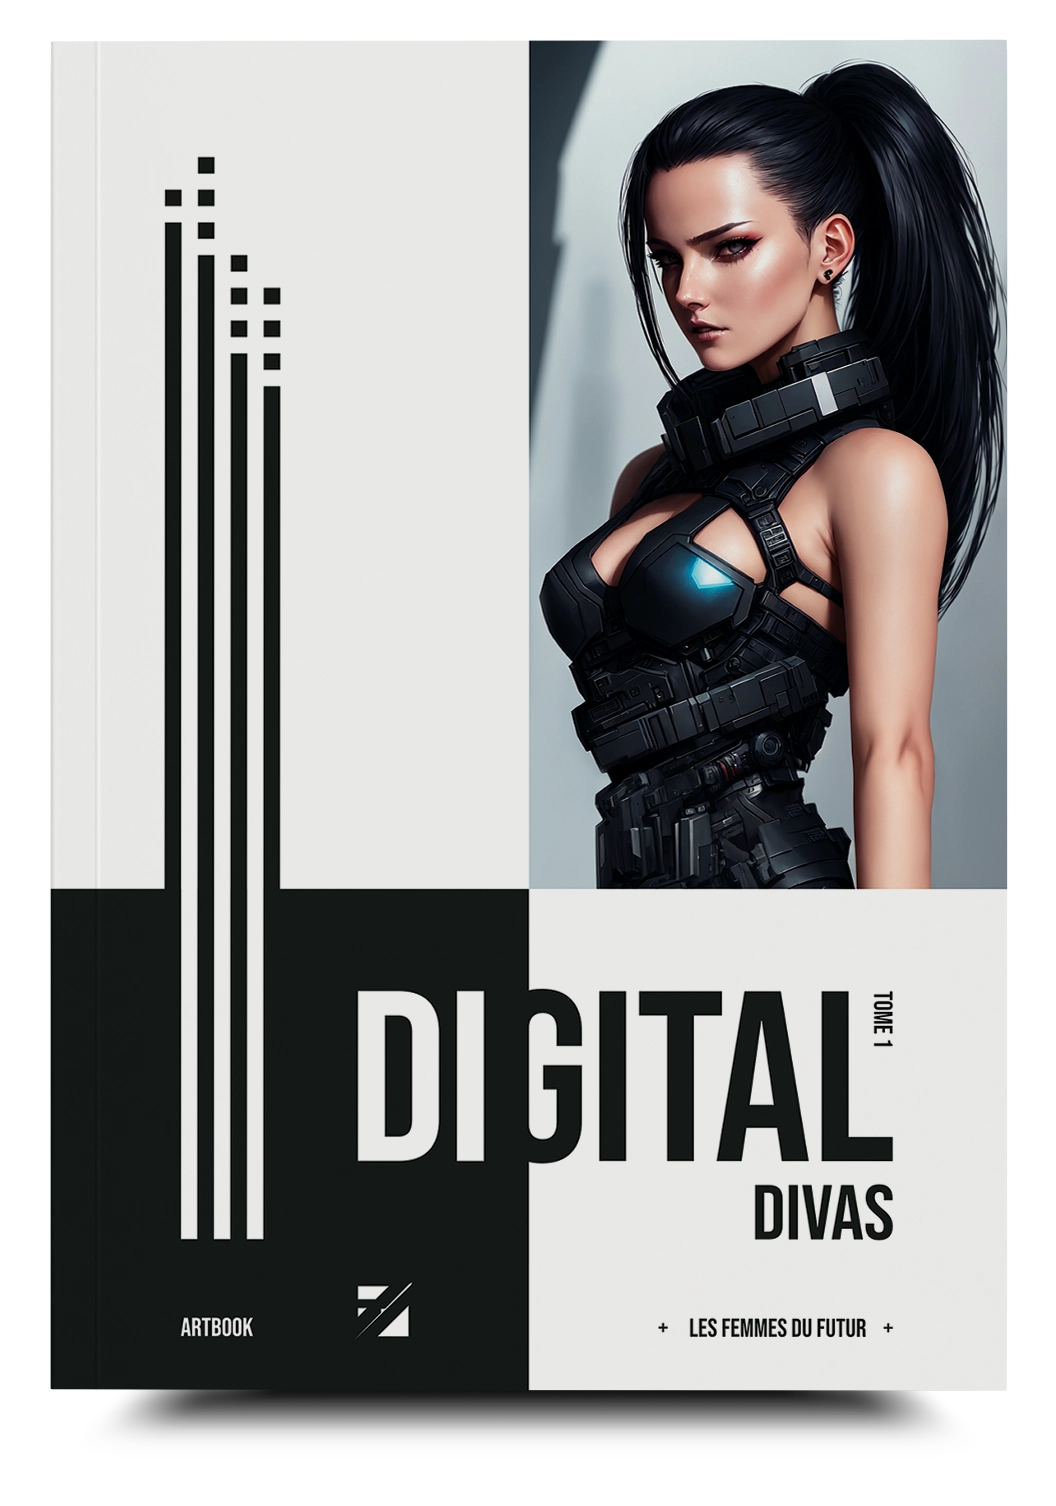 Publicité Digital Divas